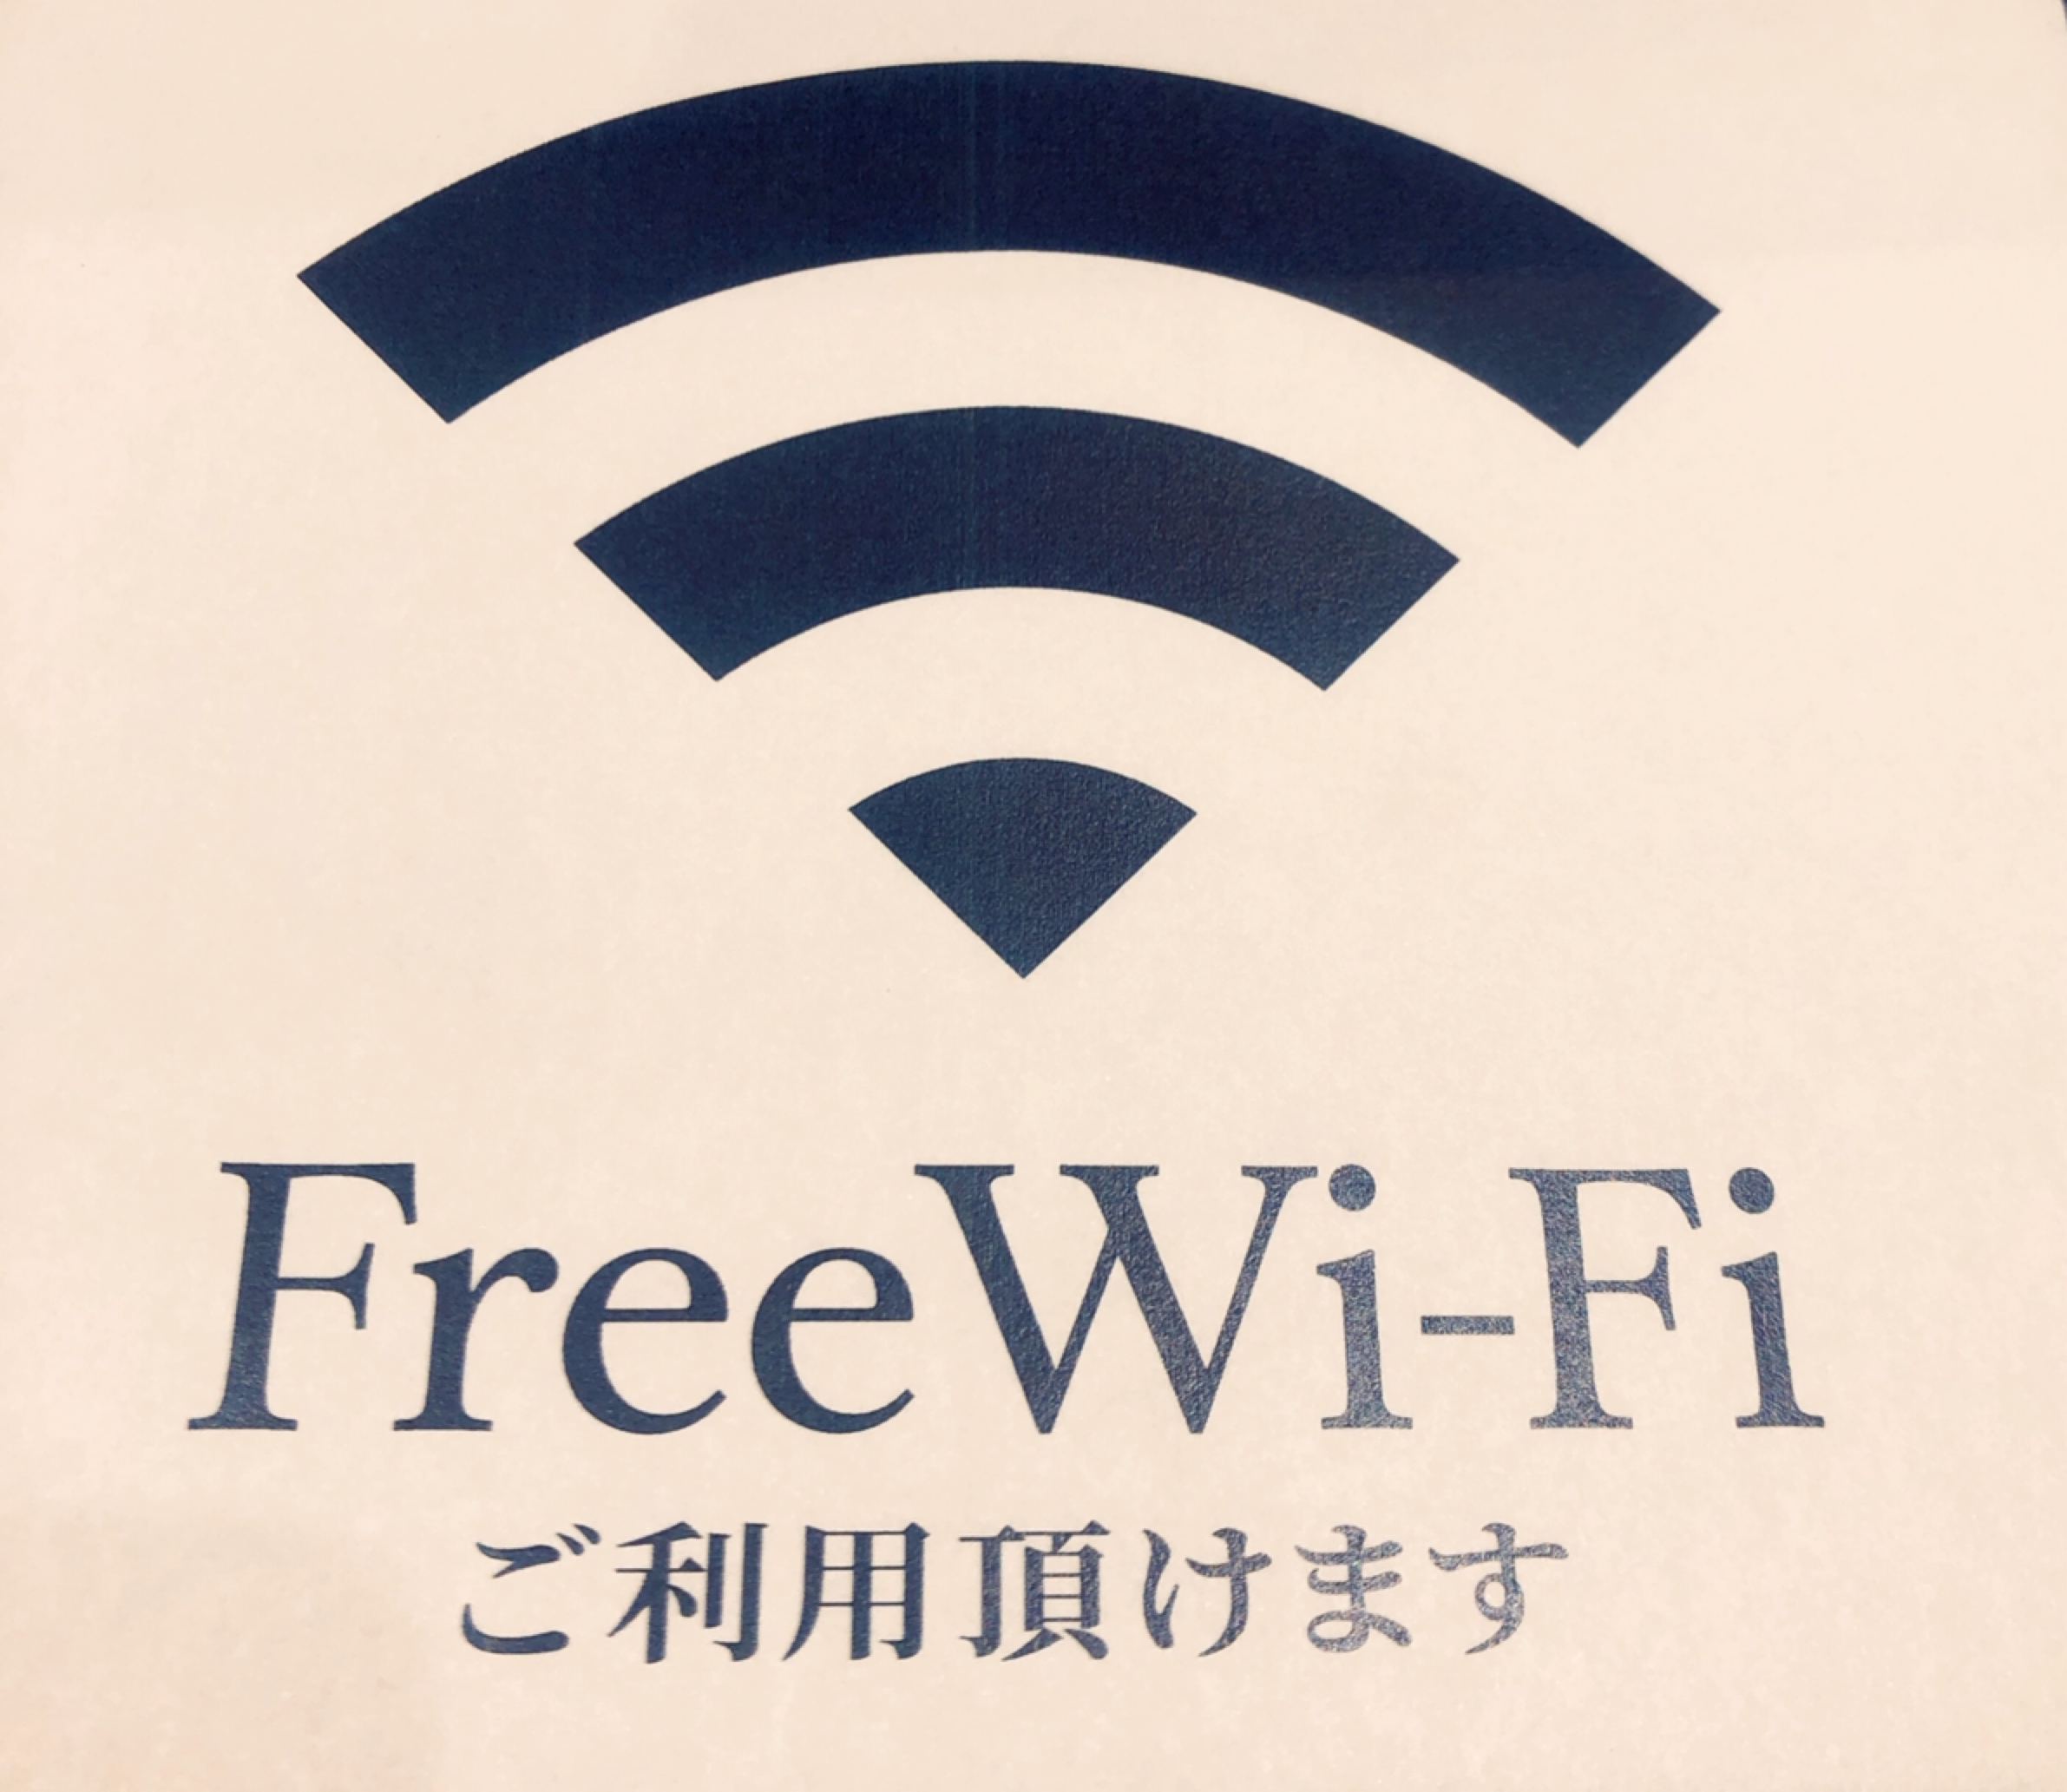 Wi-Fiご利用いただけます✨